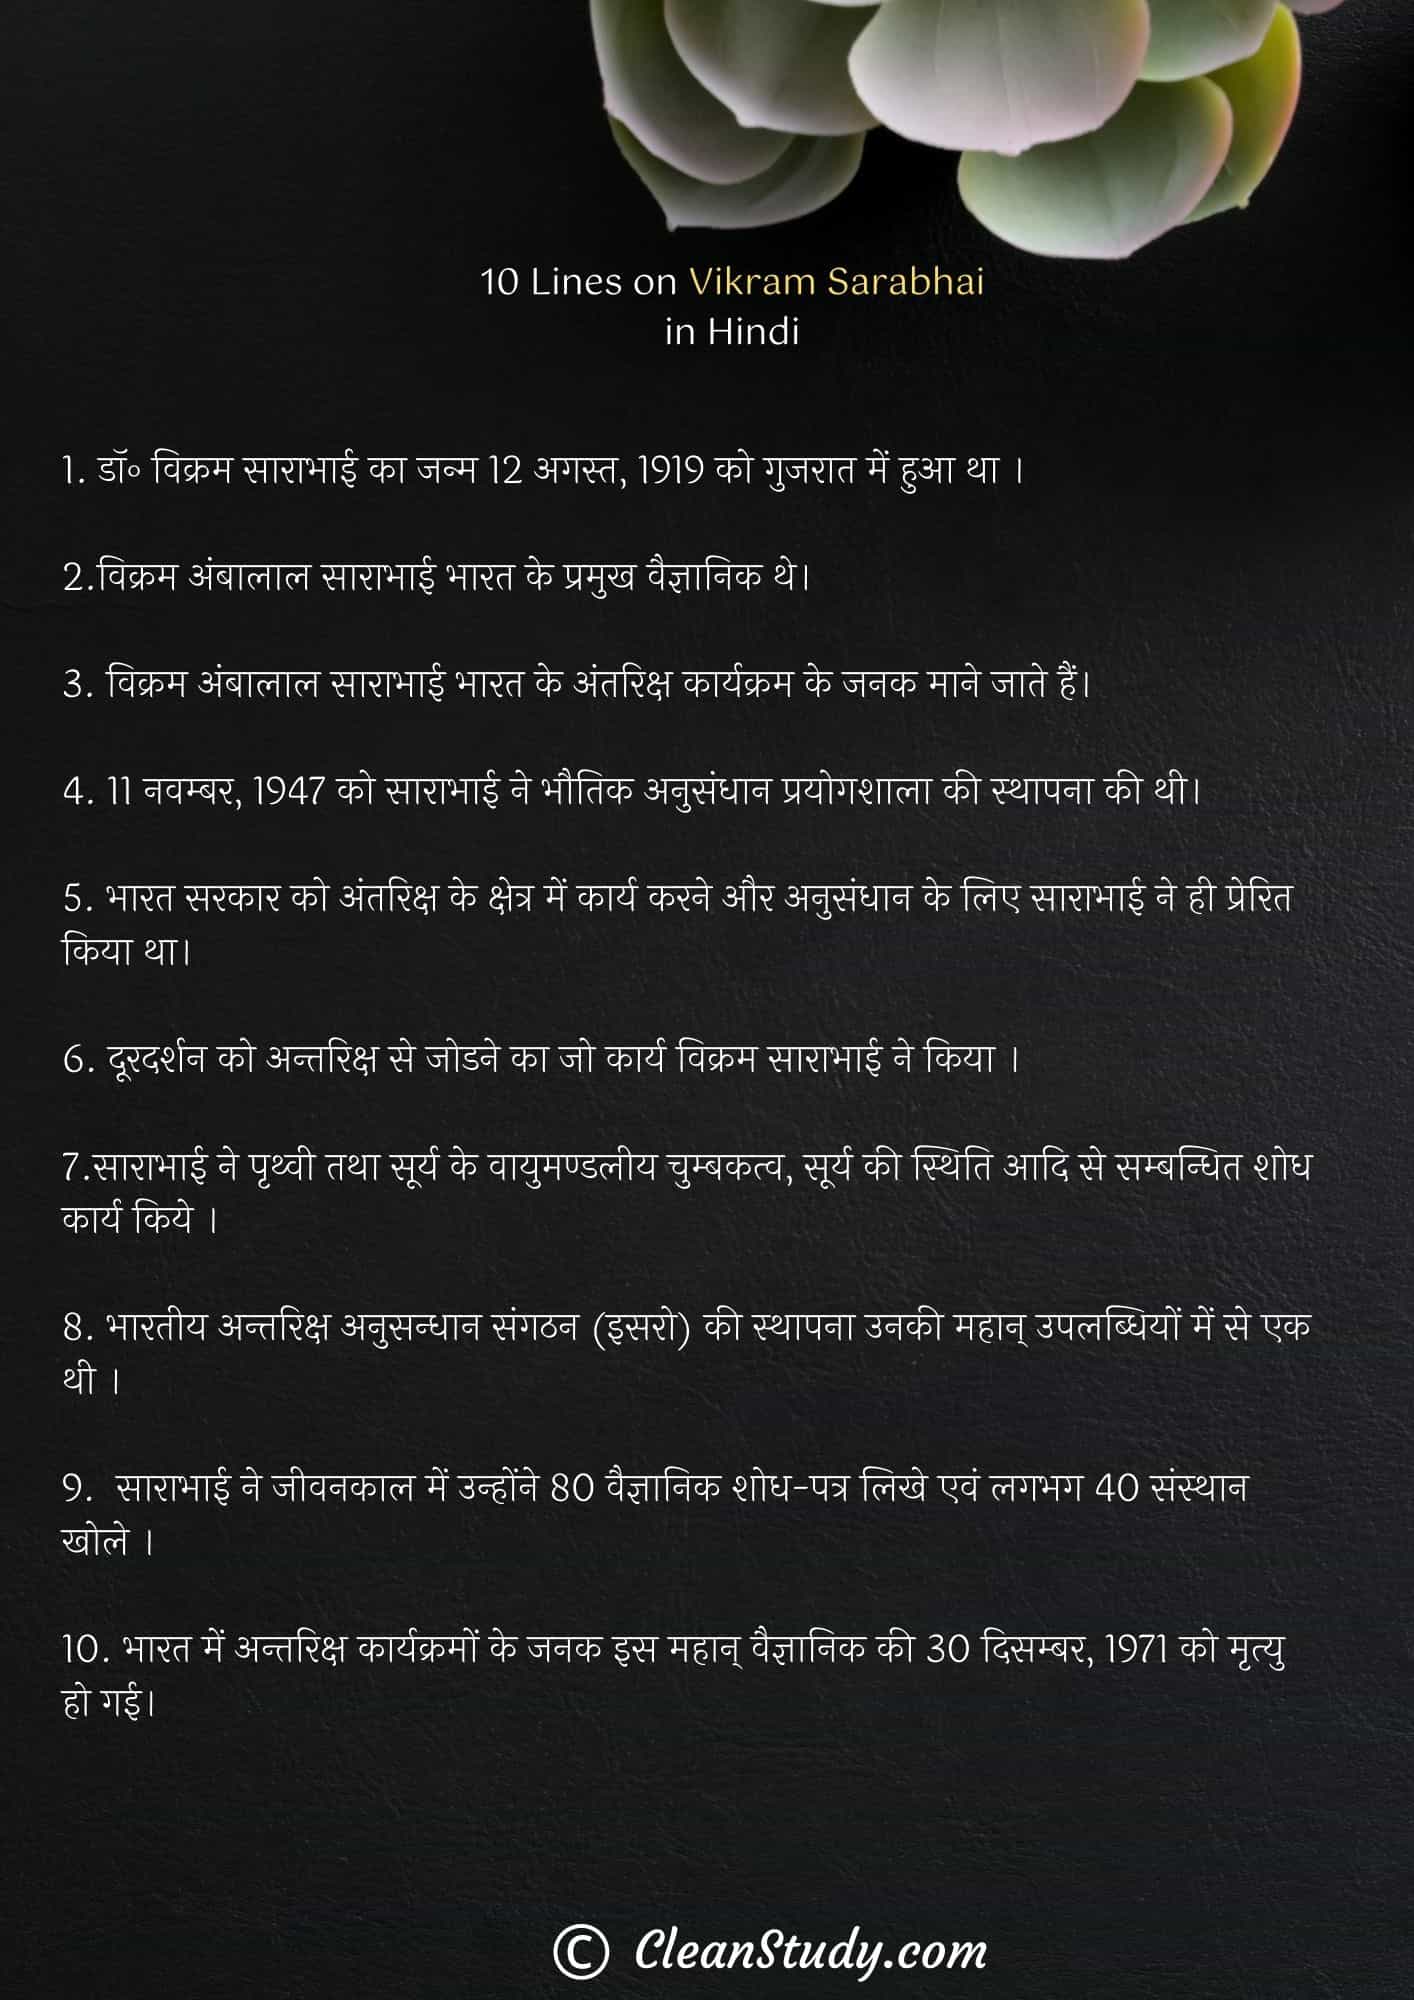 10 Lines on Vikram Sarabhai in Hindi